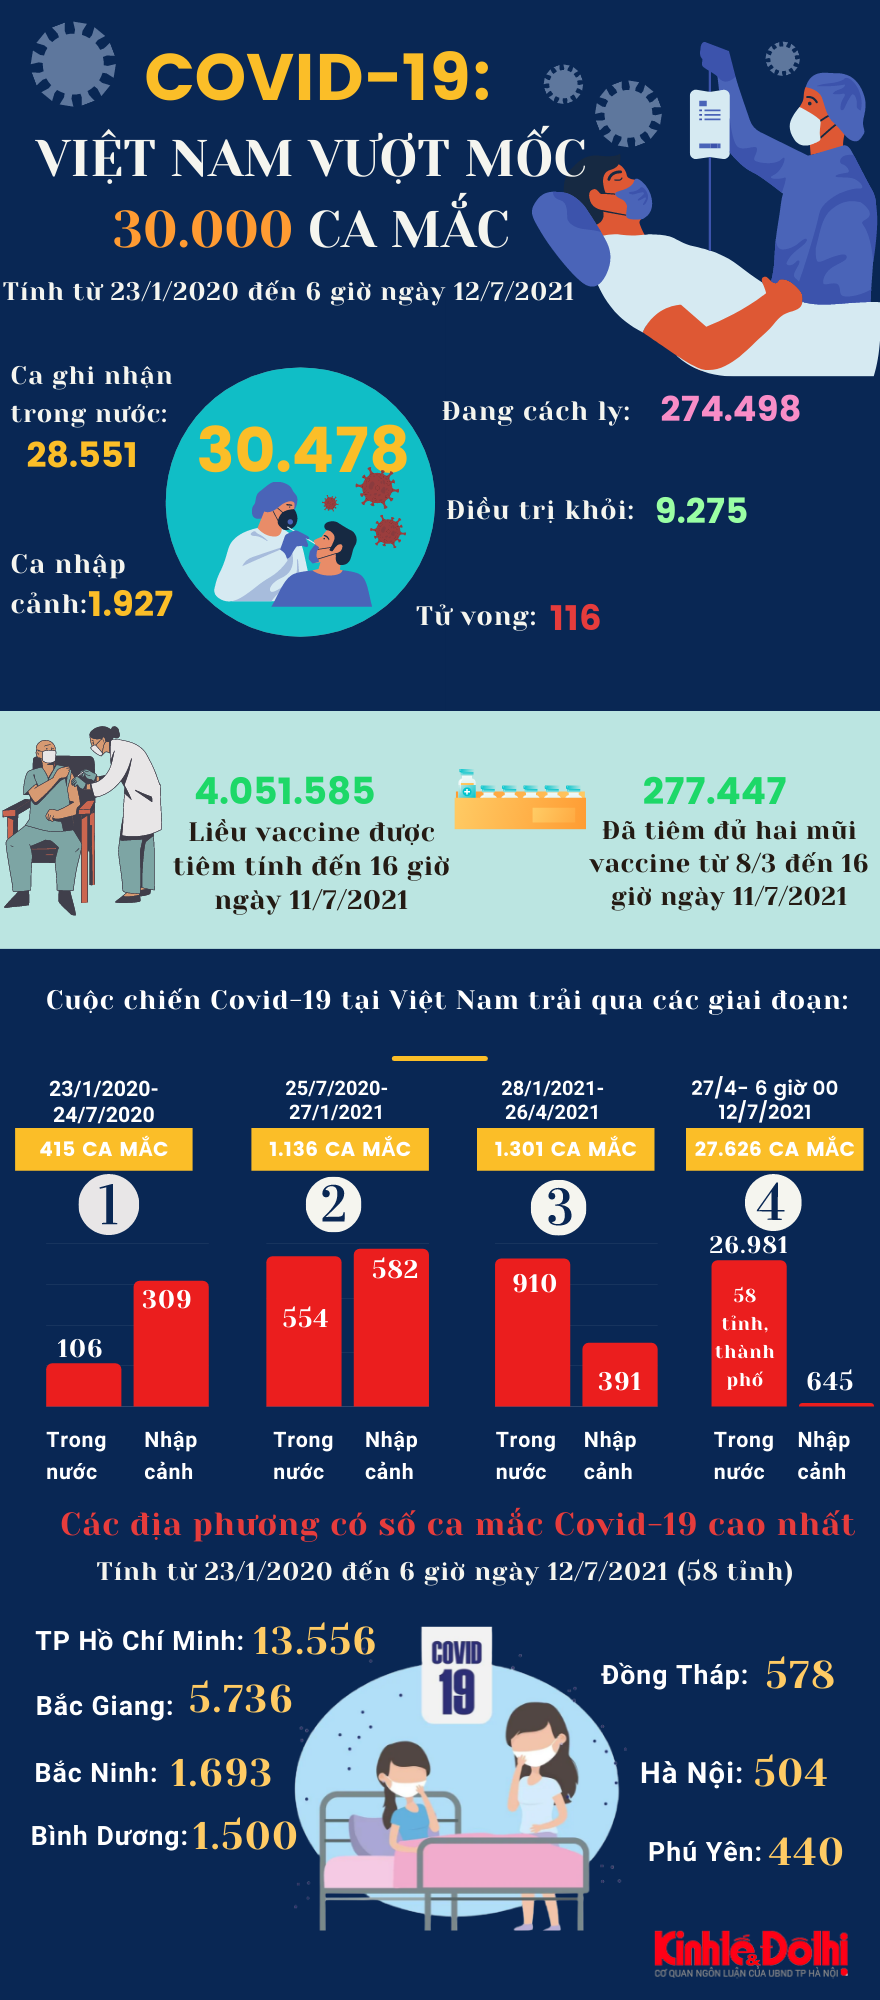 [Infographic] Việt Nam vượt mốc 30.000 ca mắc Covid-19 - Ảnh 1